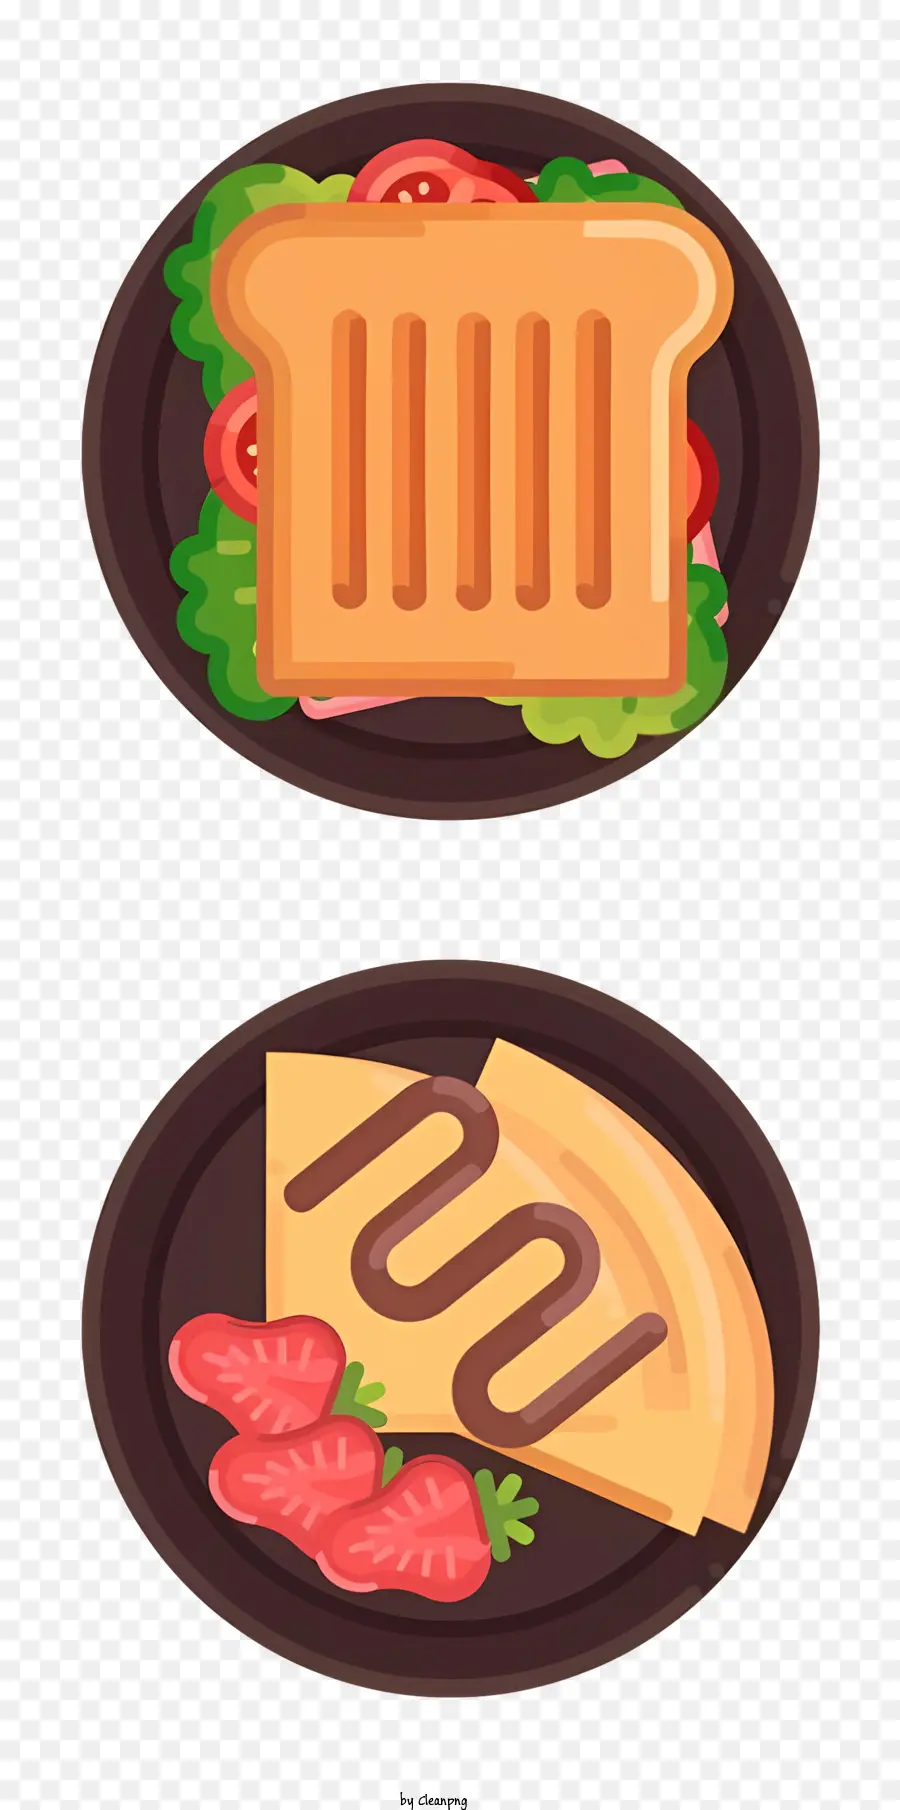 Korea Food Food -Präsentation Toast und Erdbeeren Käse- und Schinkenplattenanordnung - Zwei Teller mit Toast, Erdbeeren, Käse, Schinken